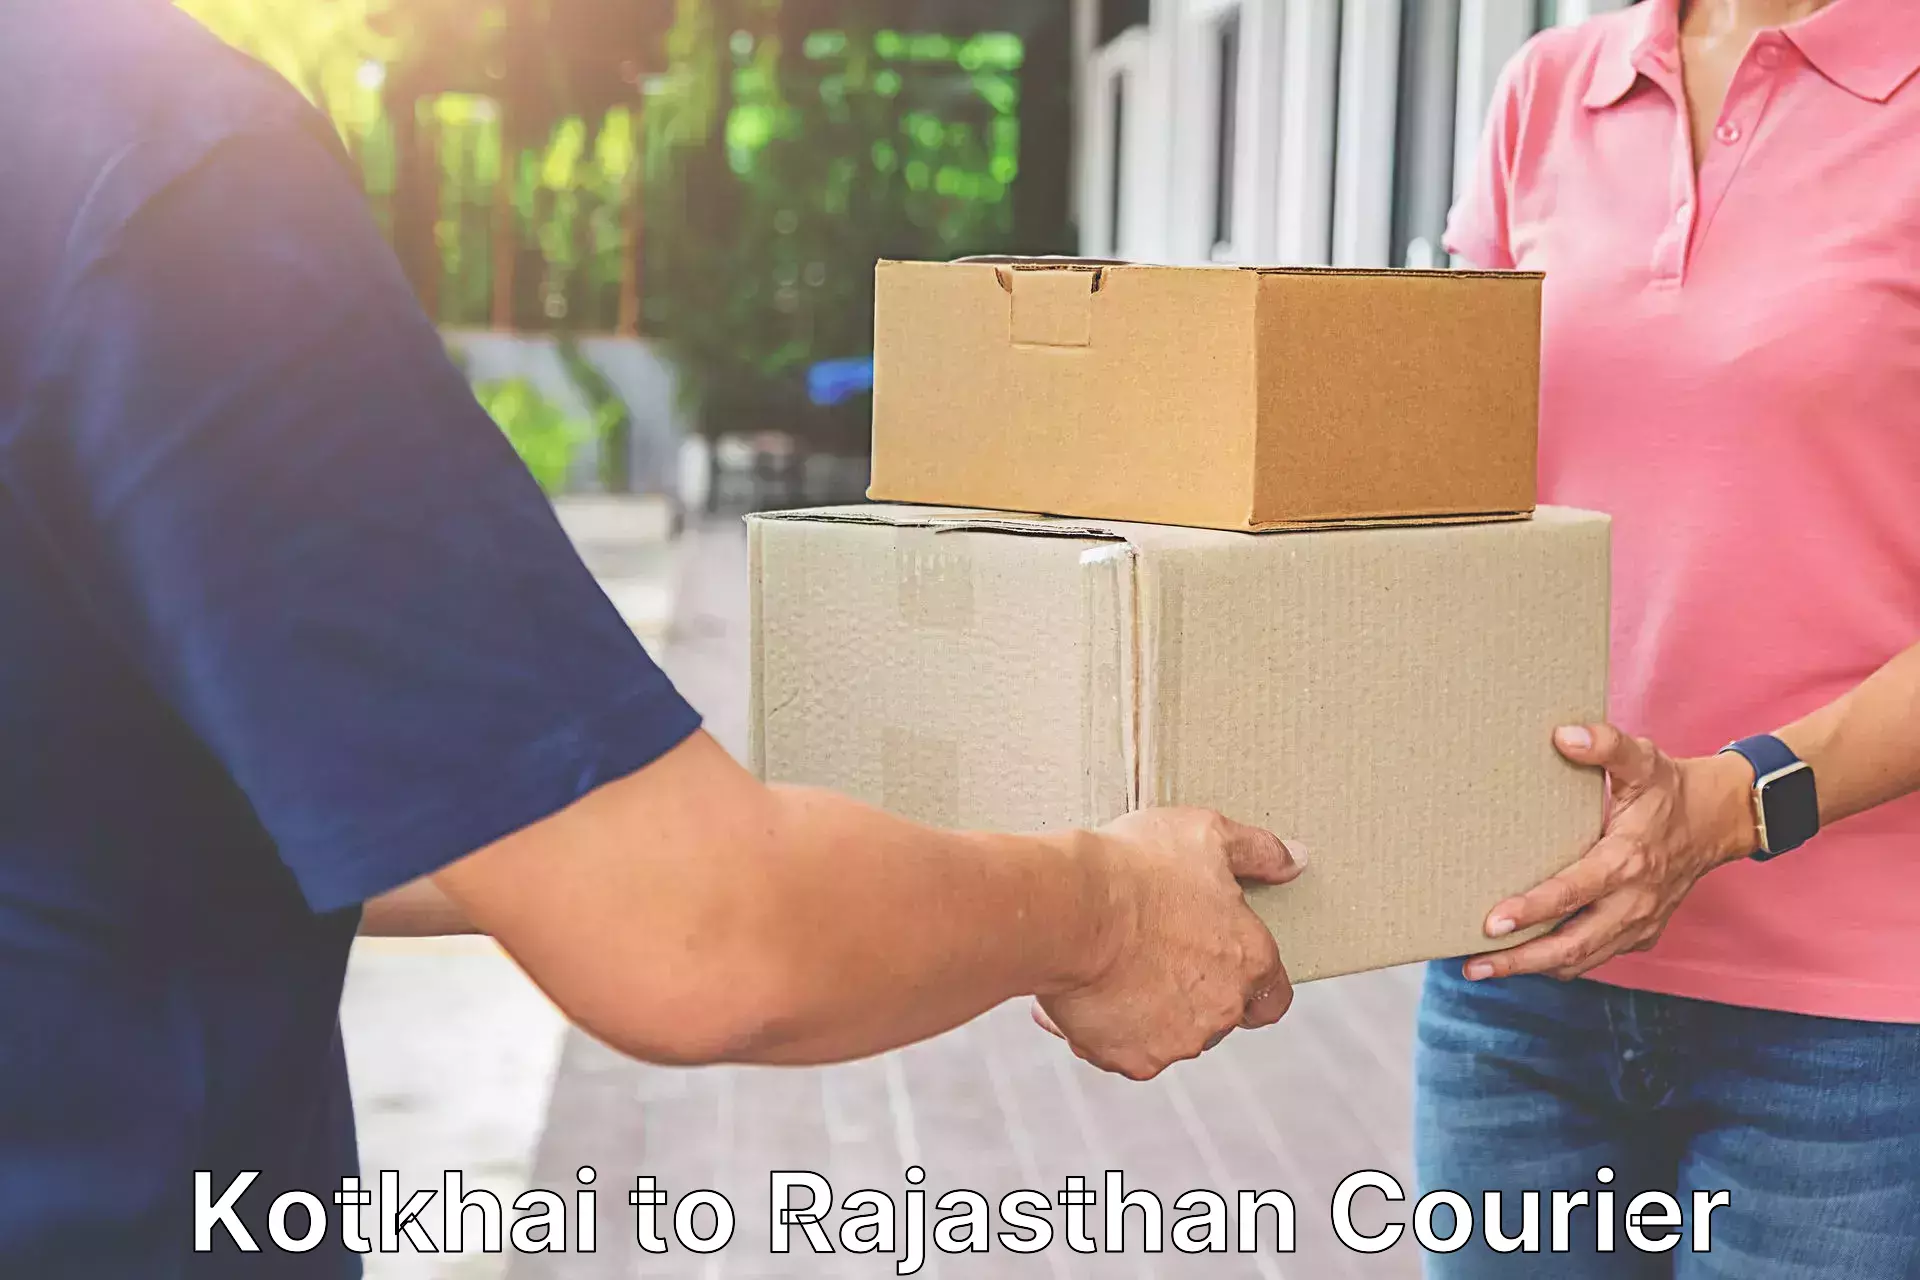 Express postal services Kotkhai to Rajasthan